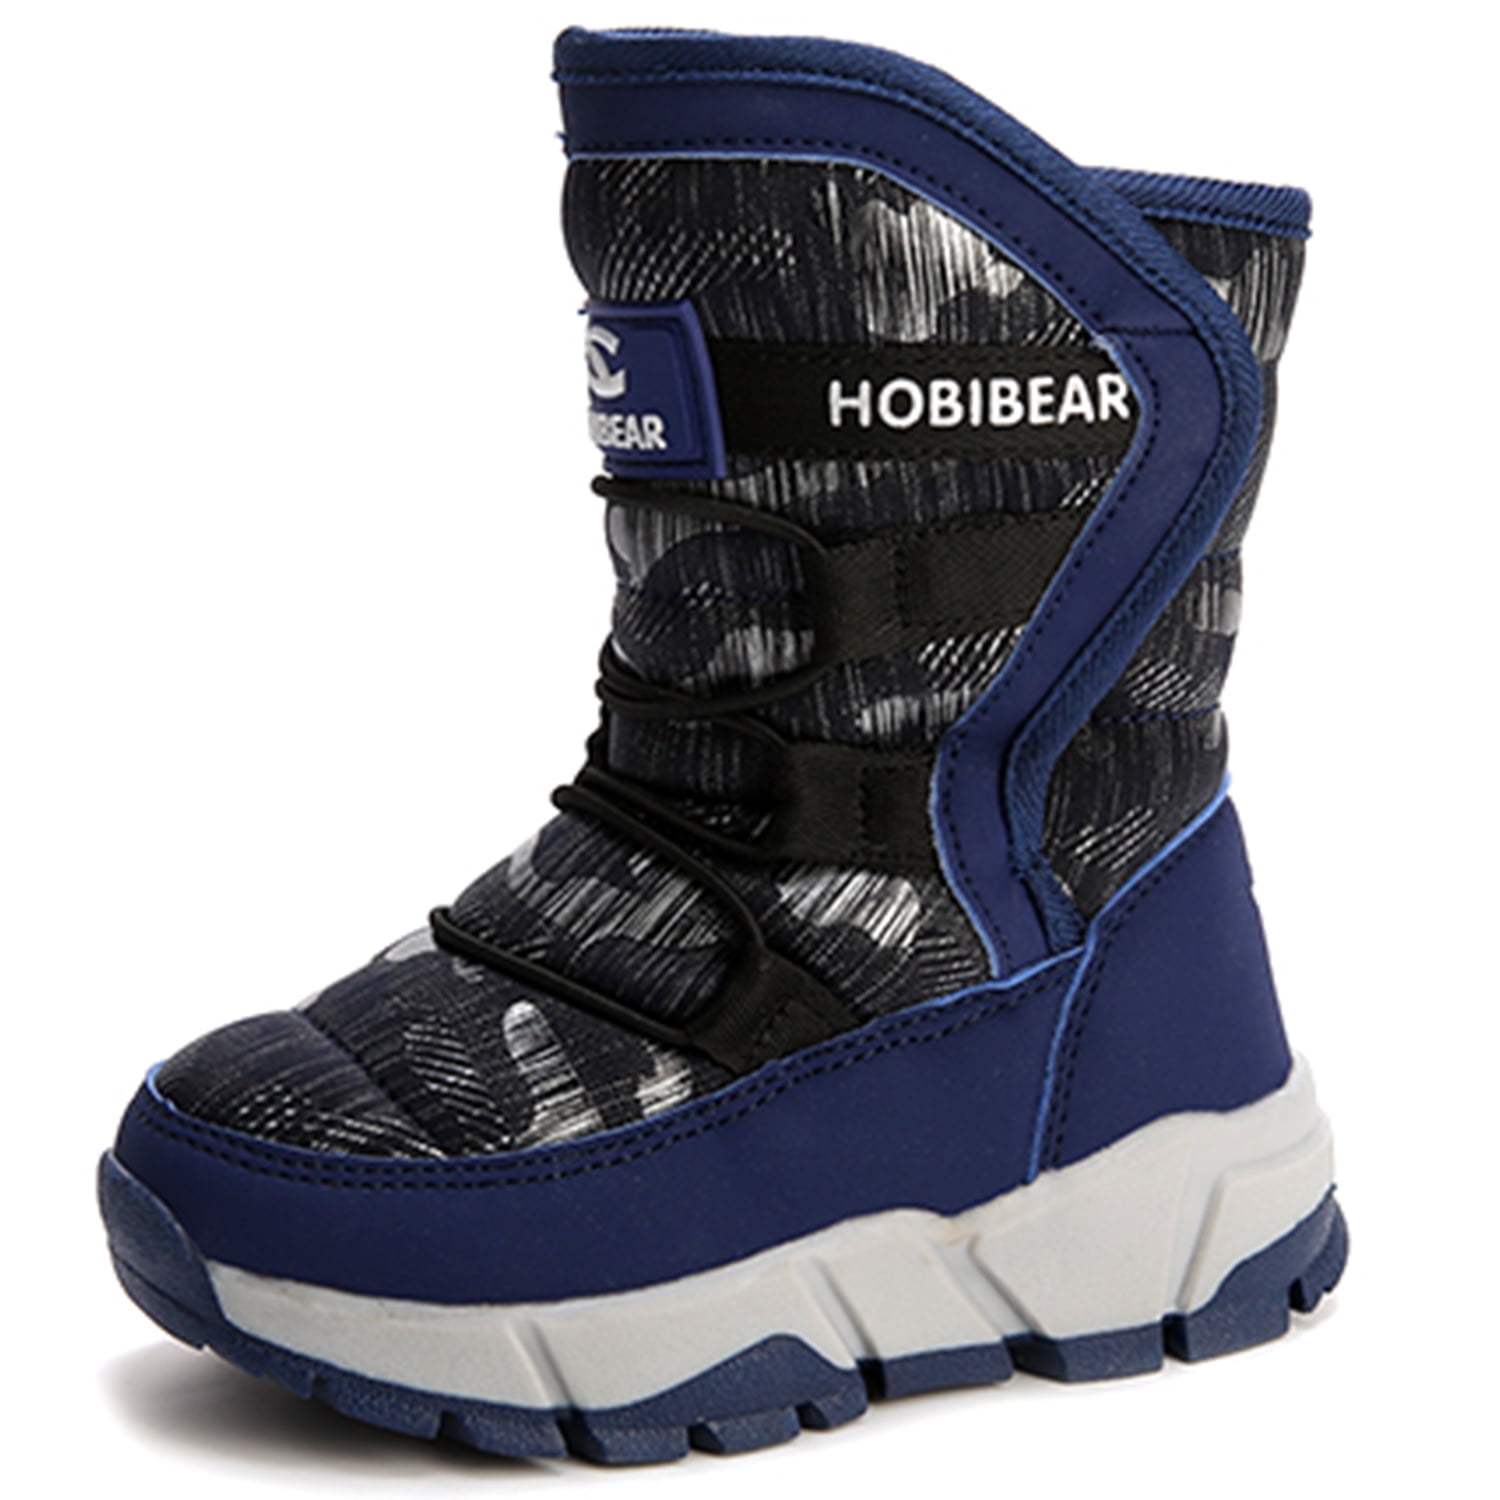 Children Winter Snow Boots for Kids Boys Girls Comfortable Non-Slip ...